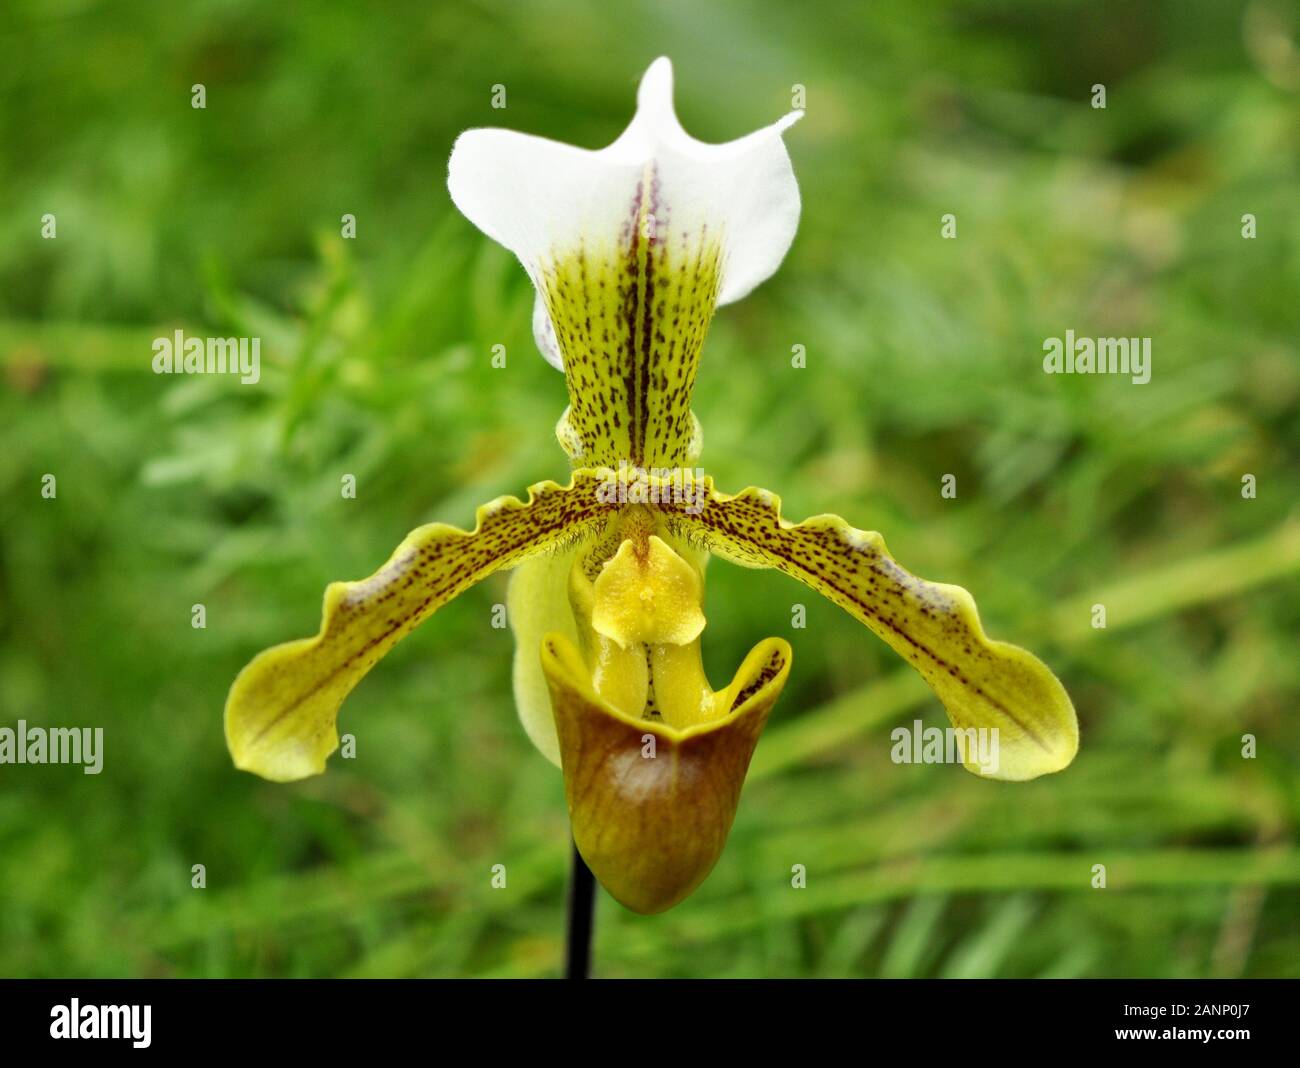 Closeup on the slipper orchid Paphiopedilum leeanum Stock Photo